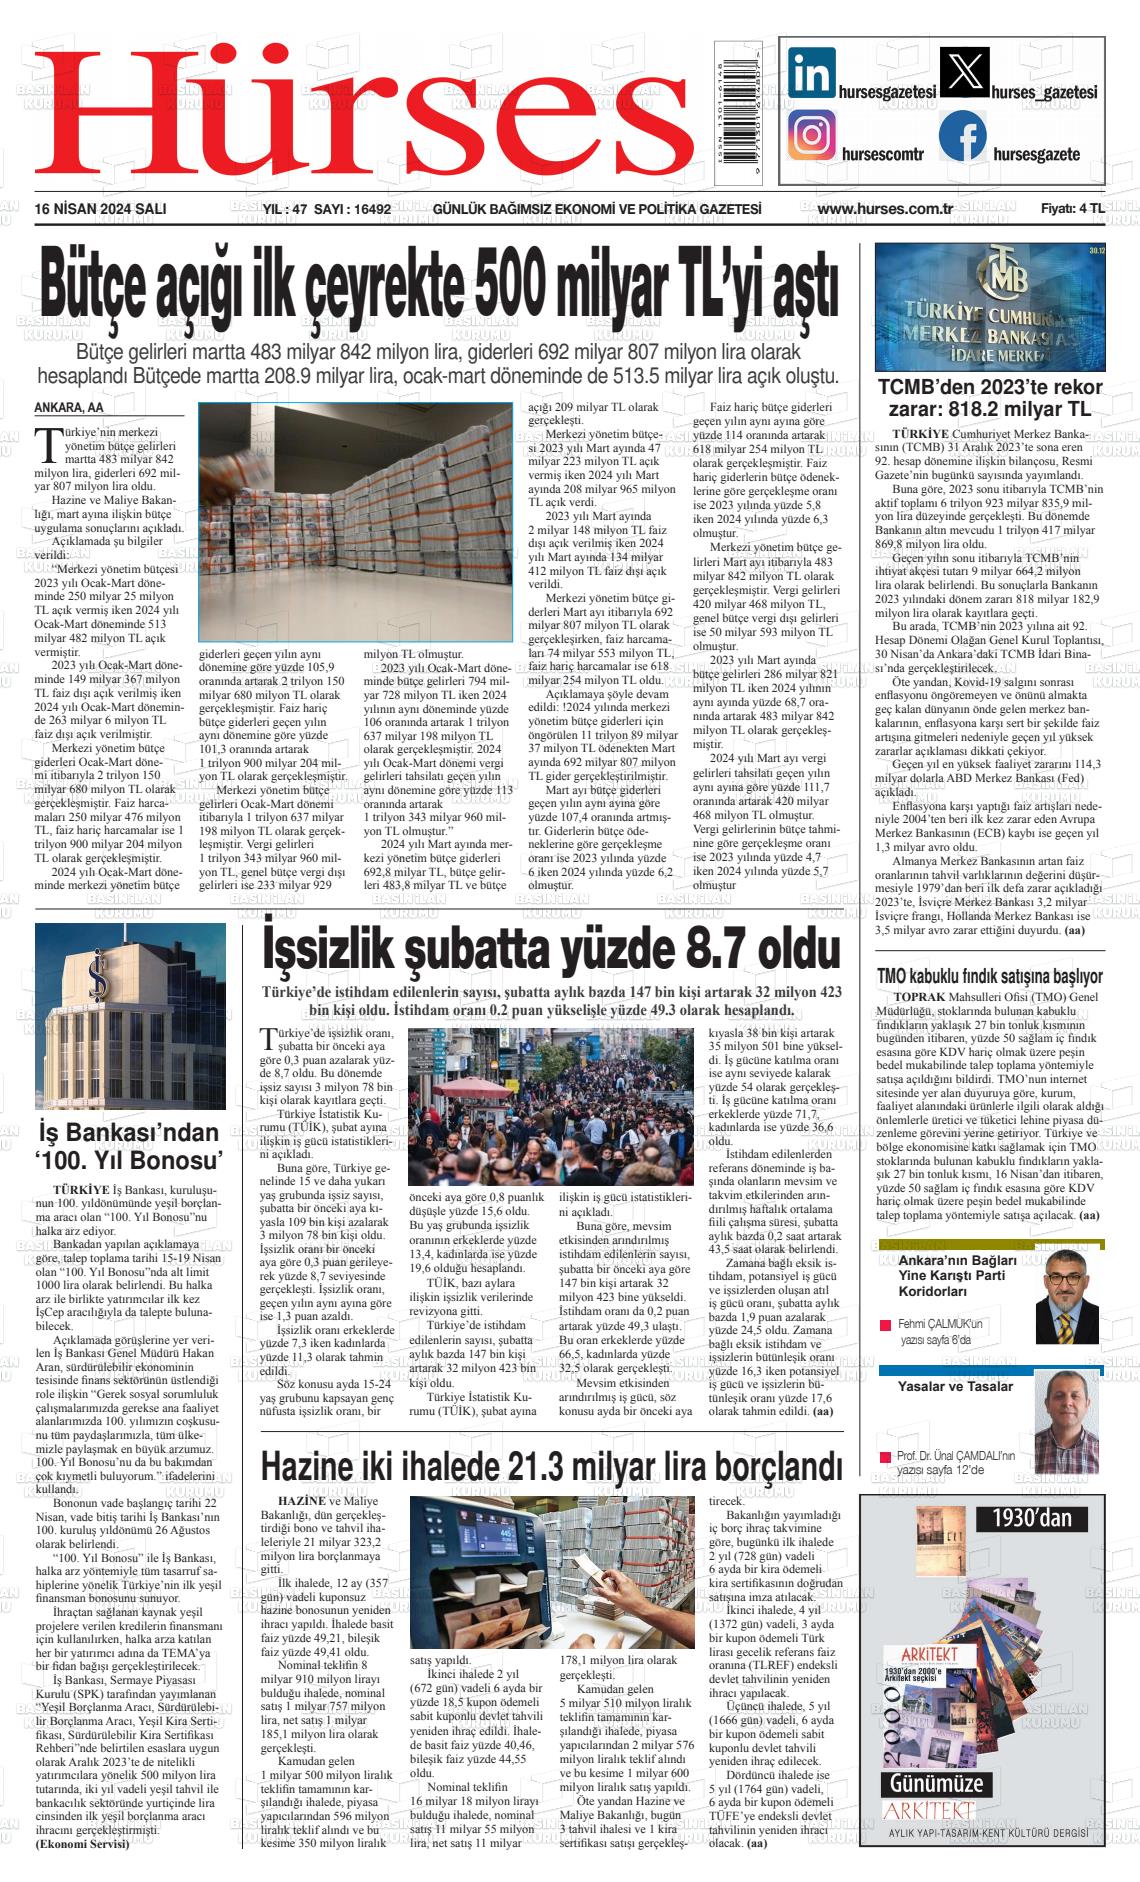 18 Nisan 2024 İstanbul Hürses gazetesi Gazete Manşeti